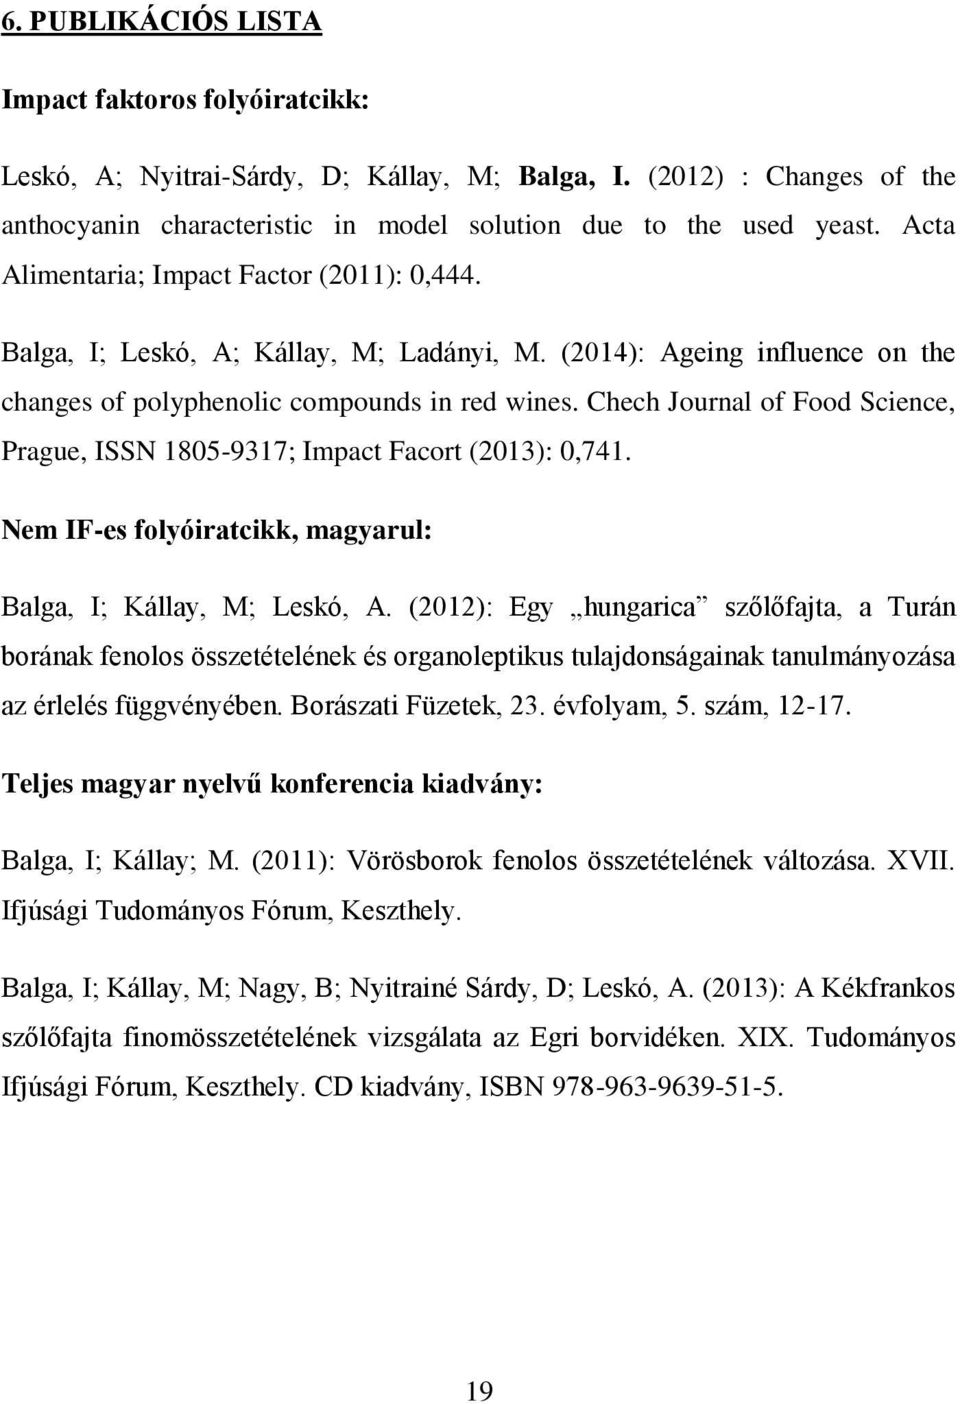 Chech Journal of Food Science, Prague, ISSN 1805-9317; Impact Facort (2013): 0,741. Nem IF-es folyóiratcikk, magyarul: Balga, I; Kállay, M; Leskó, A.